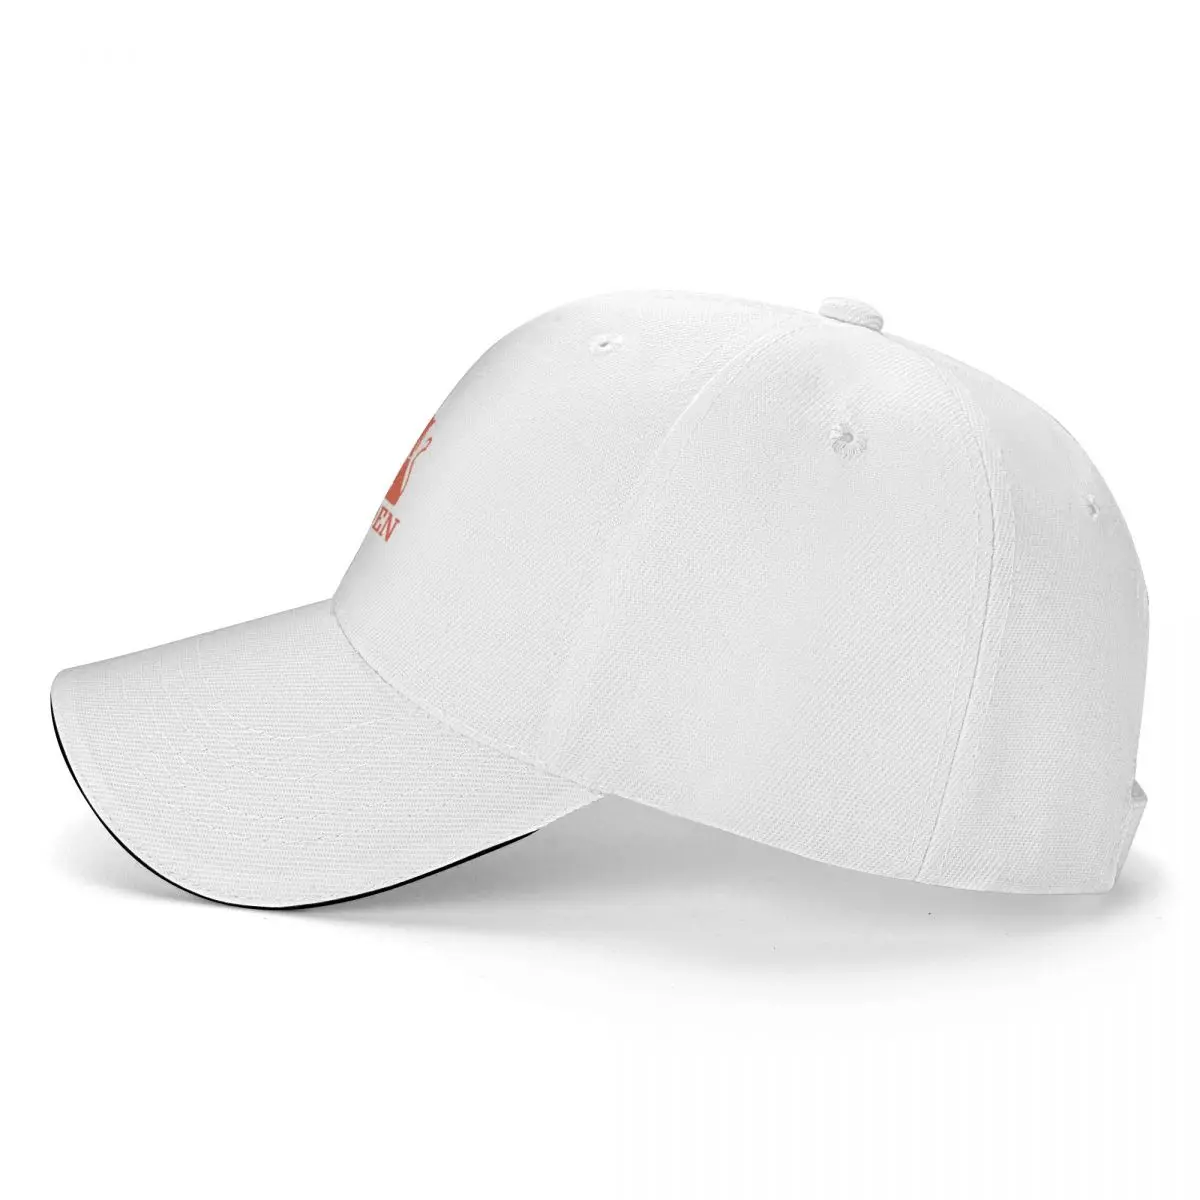 BEST SELLER - Holden Vintage Logo Merchandise Gift For Men and Women Cap  Baseball Cap trucker hats winter caps for women Men's